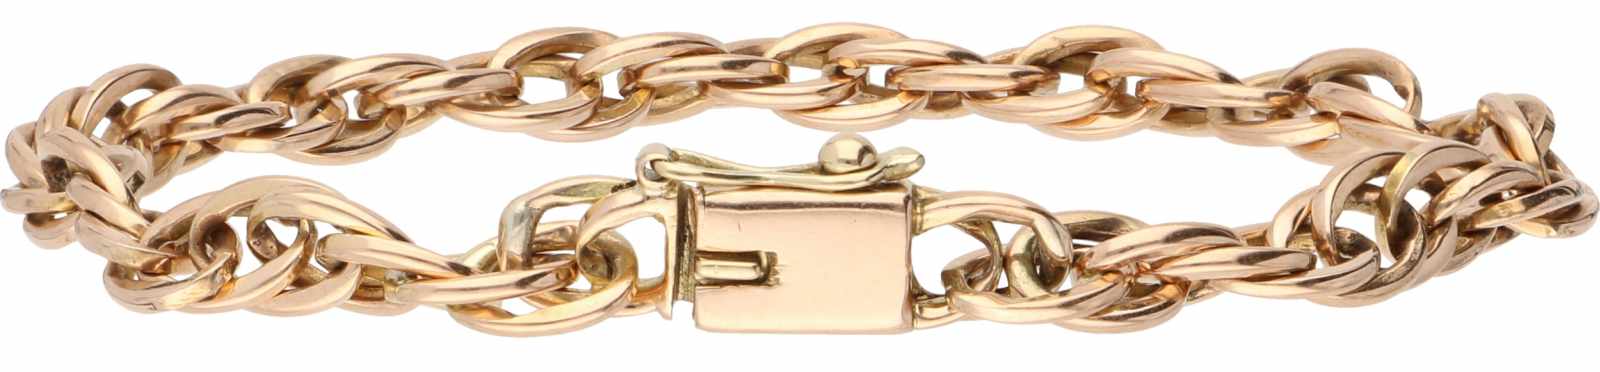 Chain bracelet rosé gold - 14 ct.< - Image 2 of 2